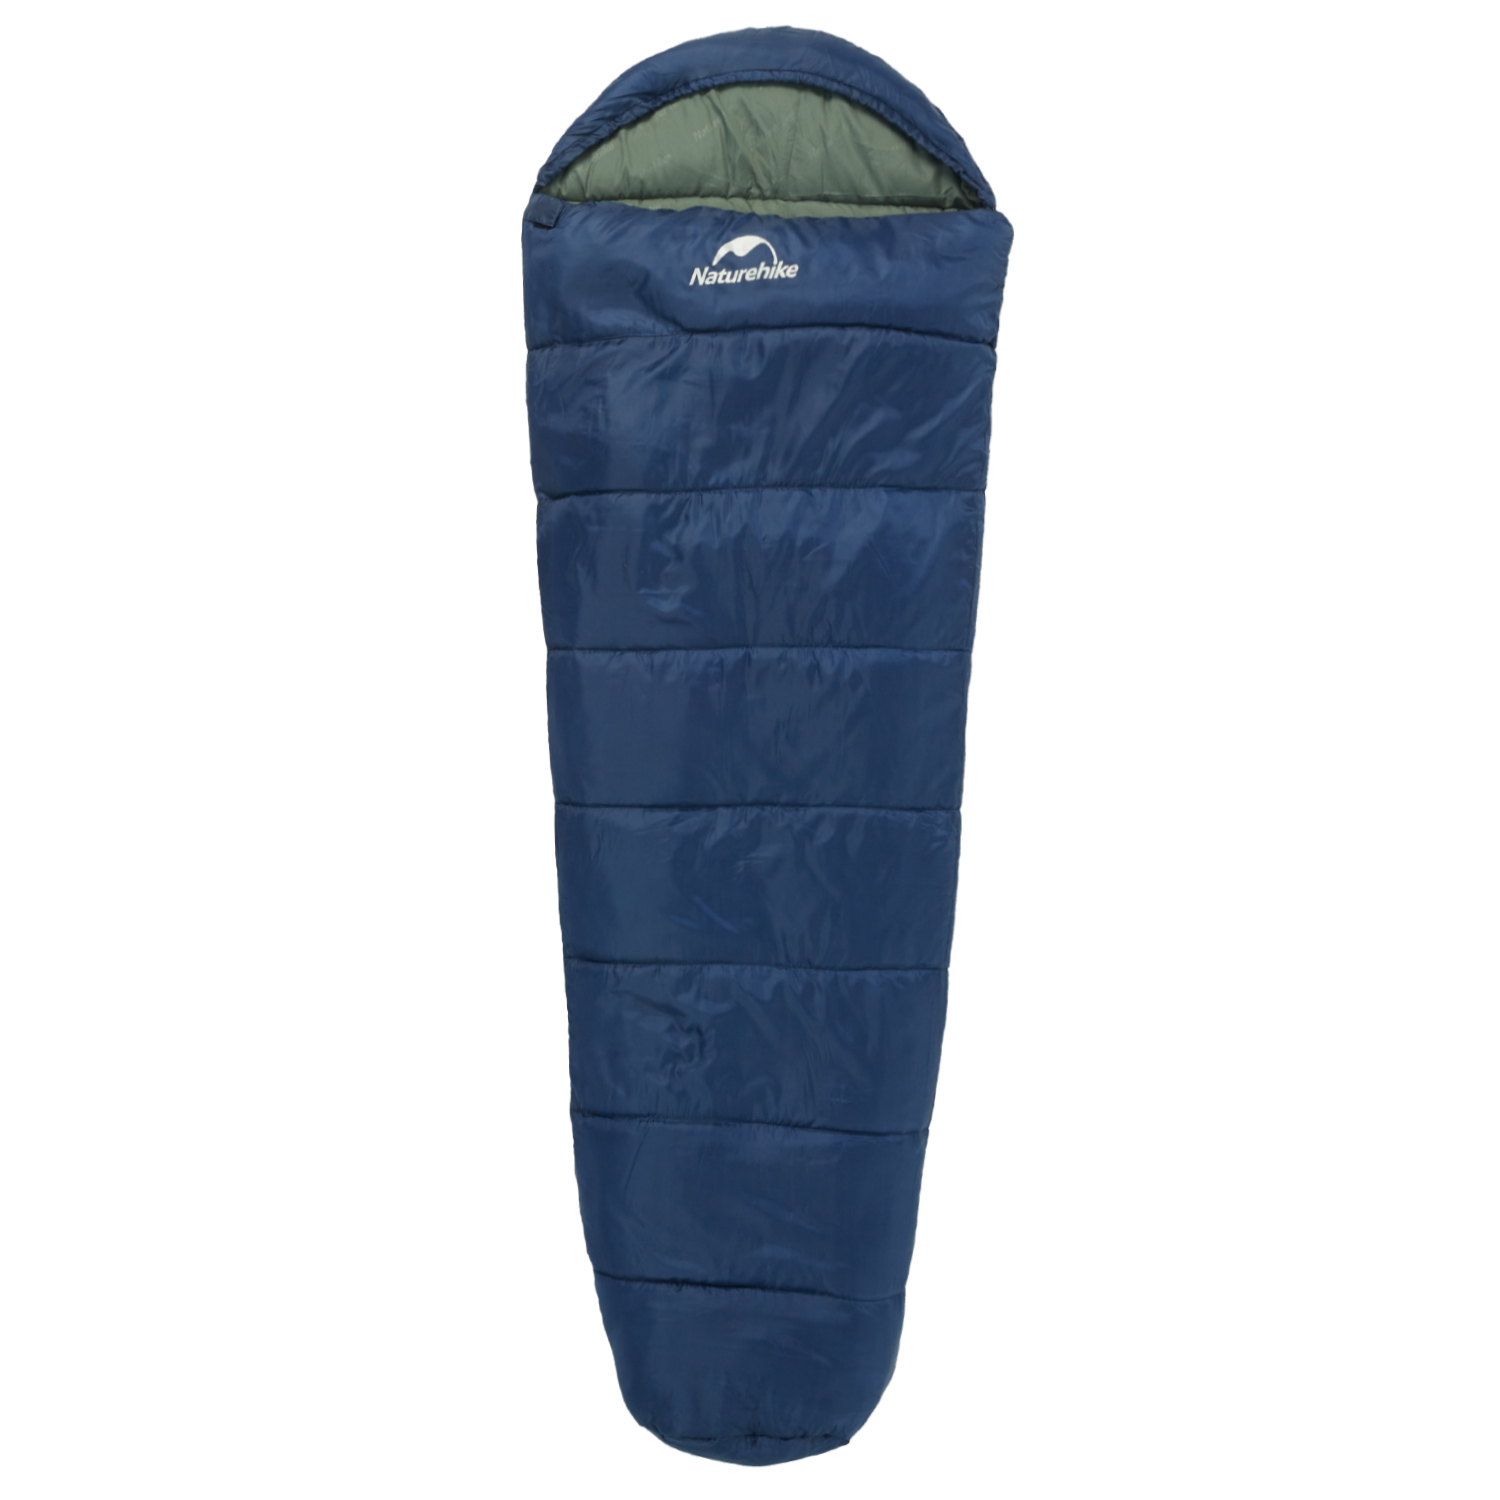 Naturehike 寝袋 マミー型 シュラフ 冬用 -5°C~4°C オールシーズン スリーピングバッグ